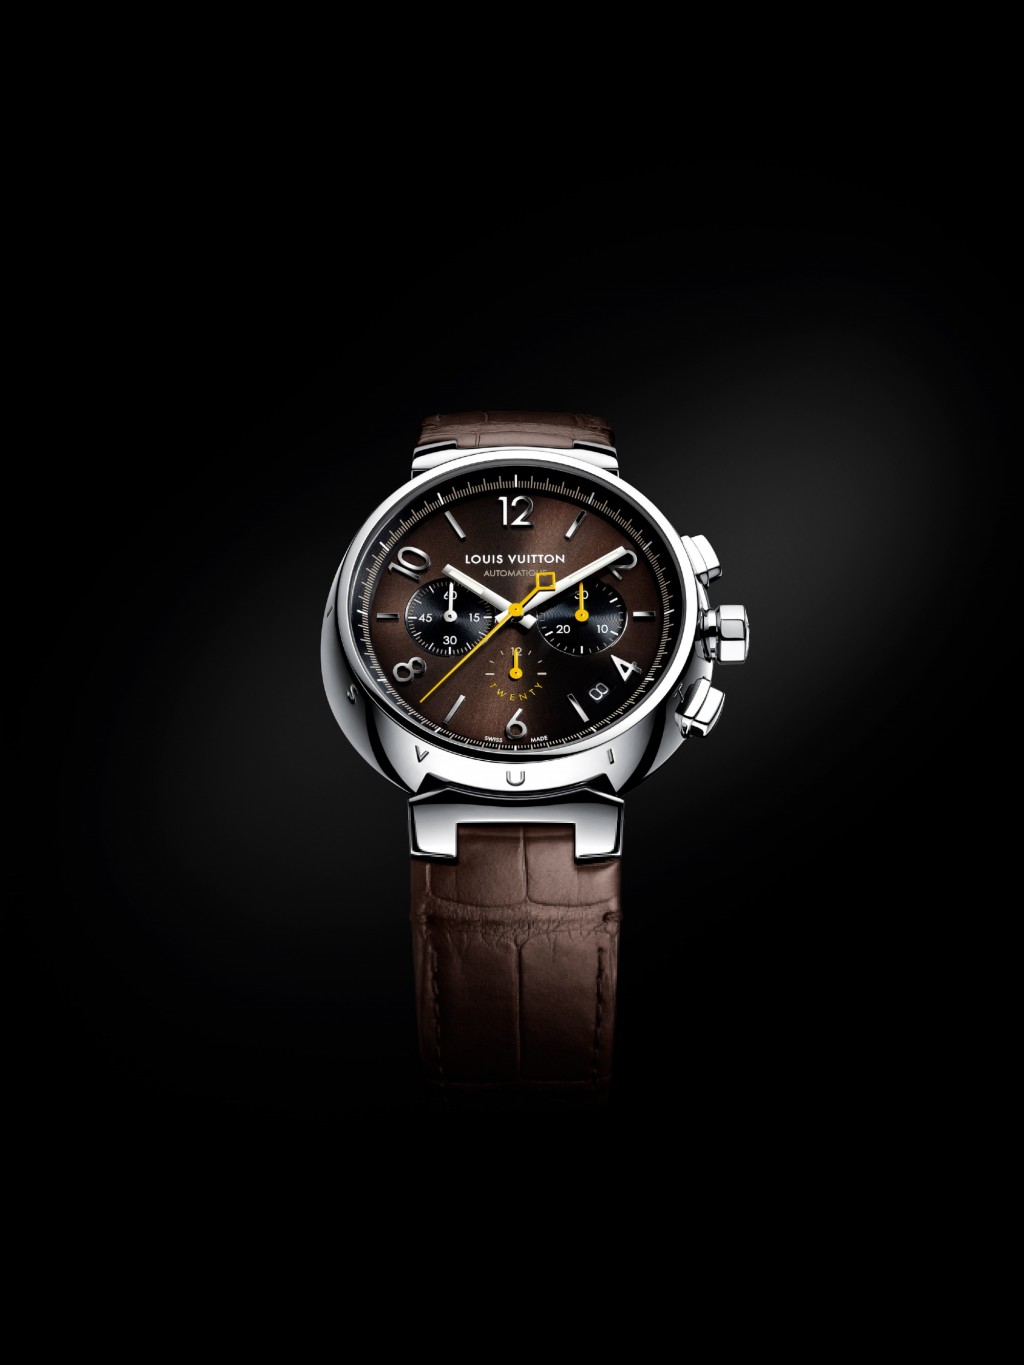 Louis Vuitton高级制表工坊推出 Tambour 20 腕表图片